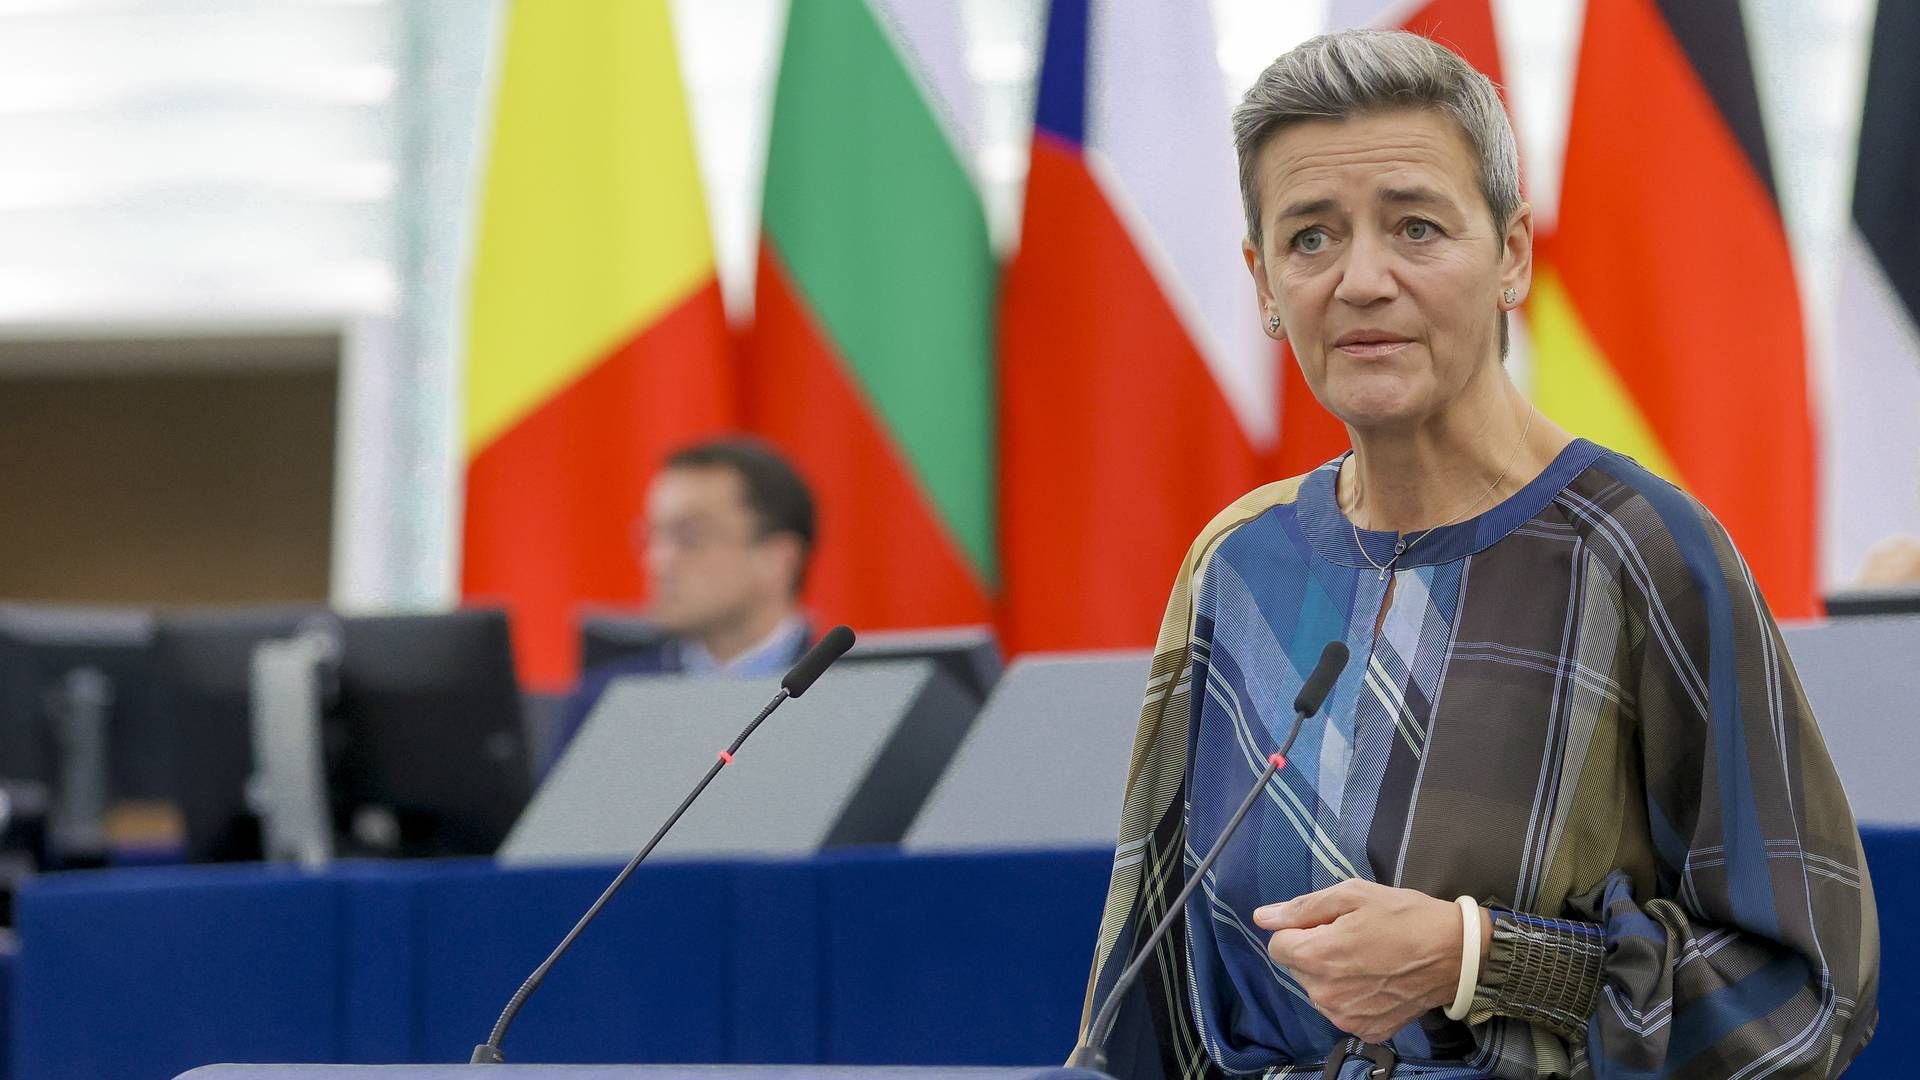 Konkurrencekommissær Margrethe Vestager har fundet beviser for, at Teva bryder sig imod flere af unionens regler. | Foto: Julien Warnand/EPA / EPA